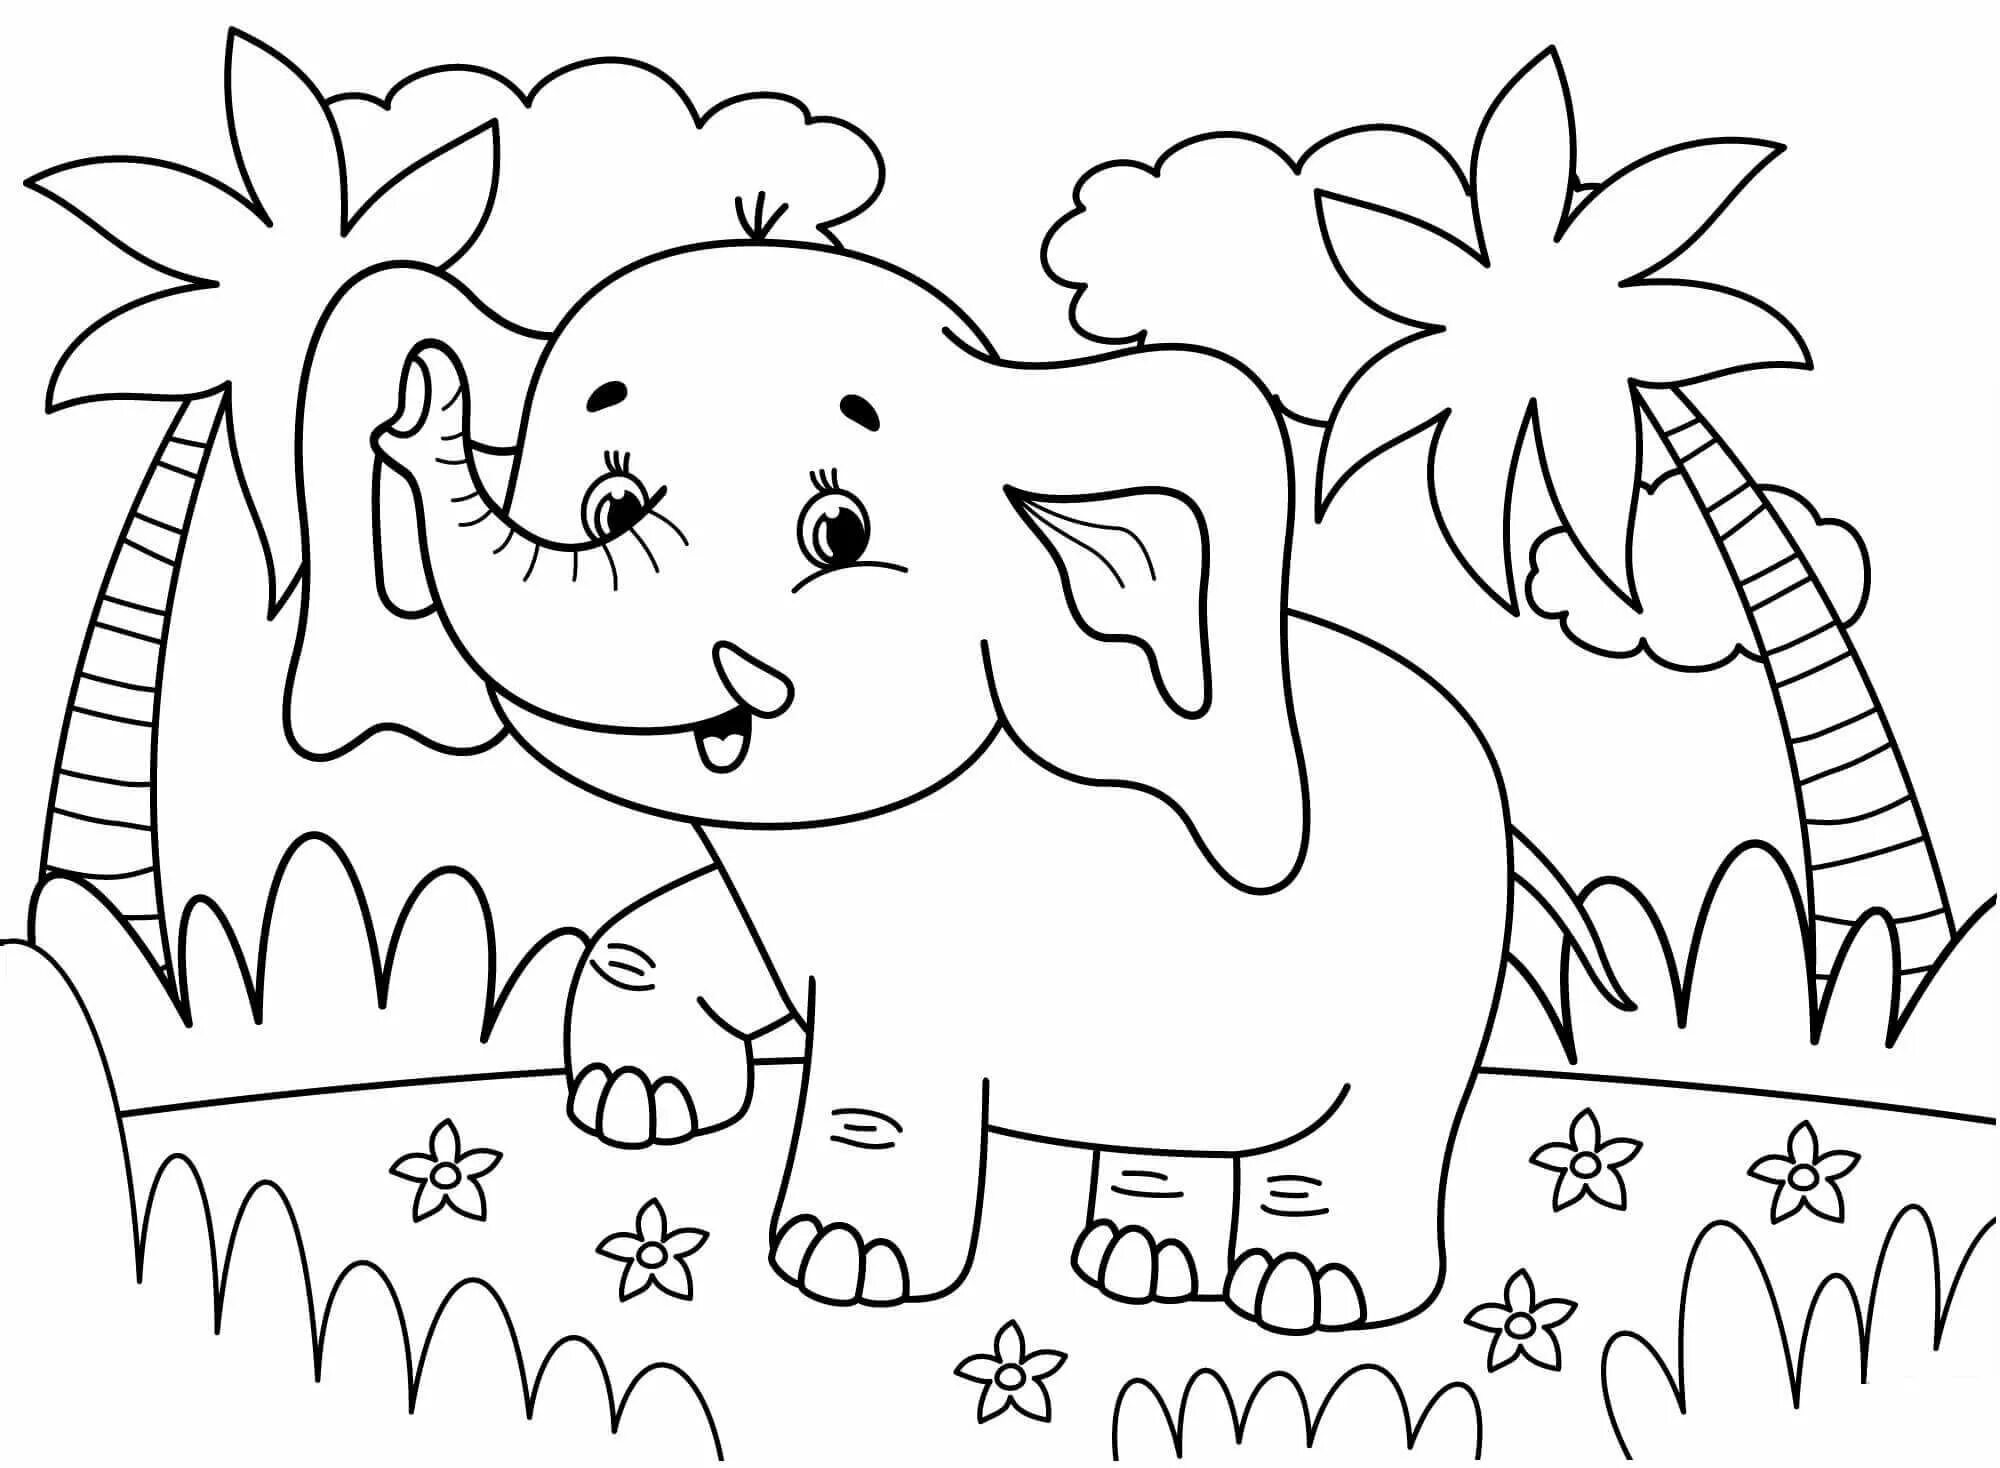 Слон раскраска. Раскраска Слоник. Слоник раскраска для детей. Раскраска для малышей (слон). Слоник распечатать